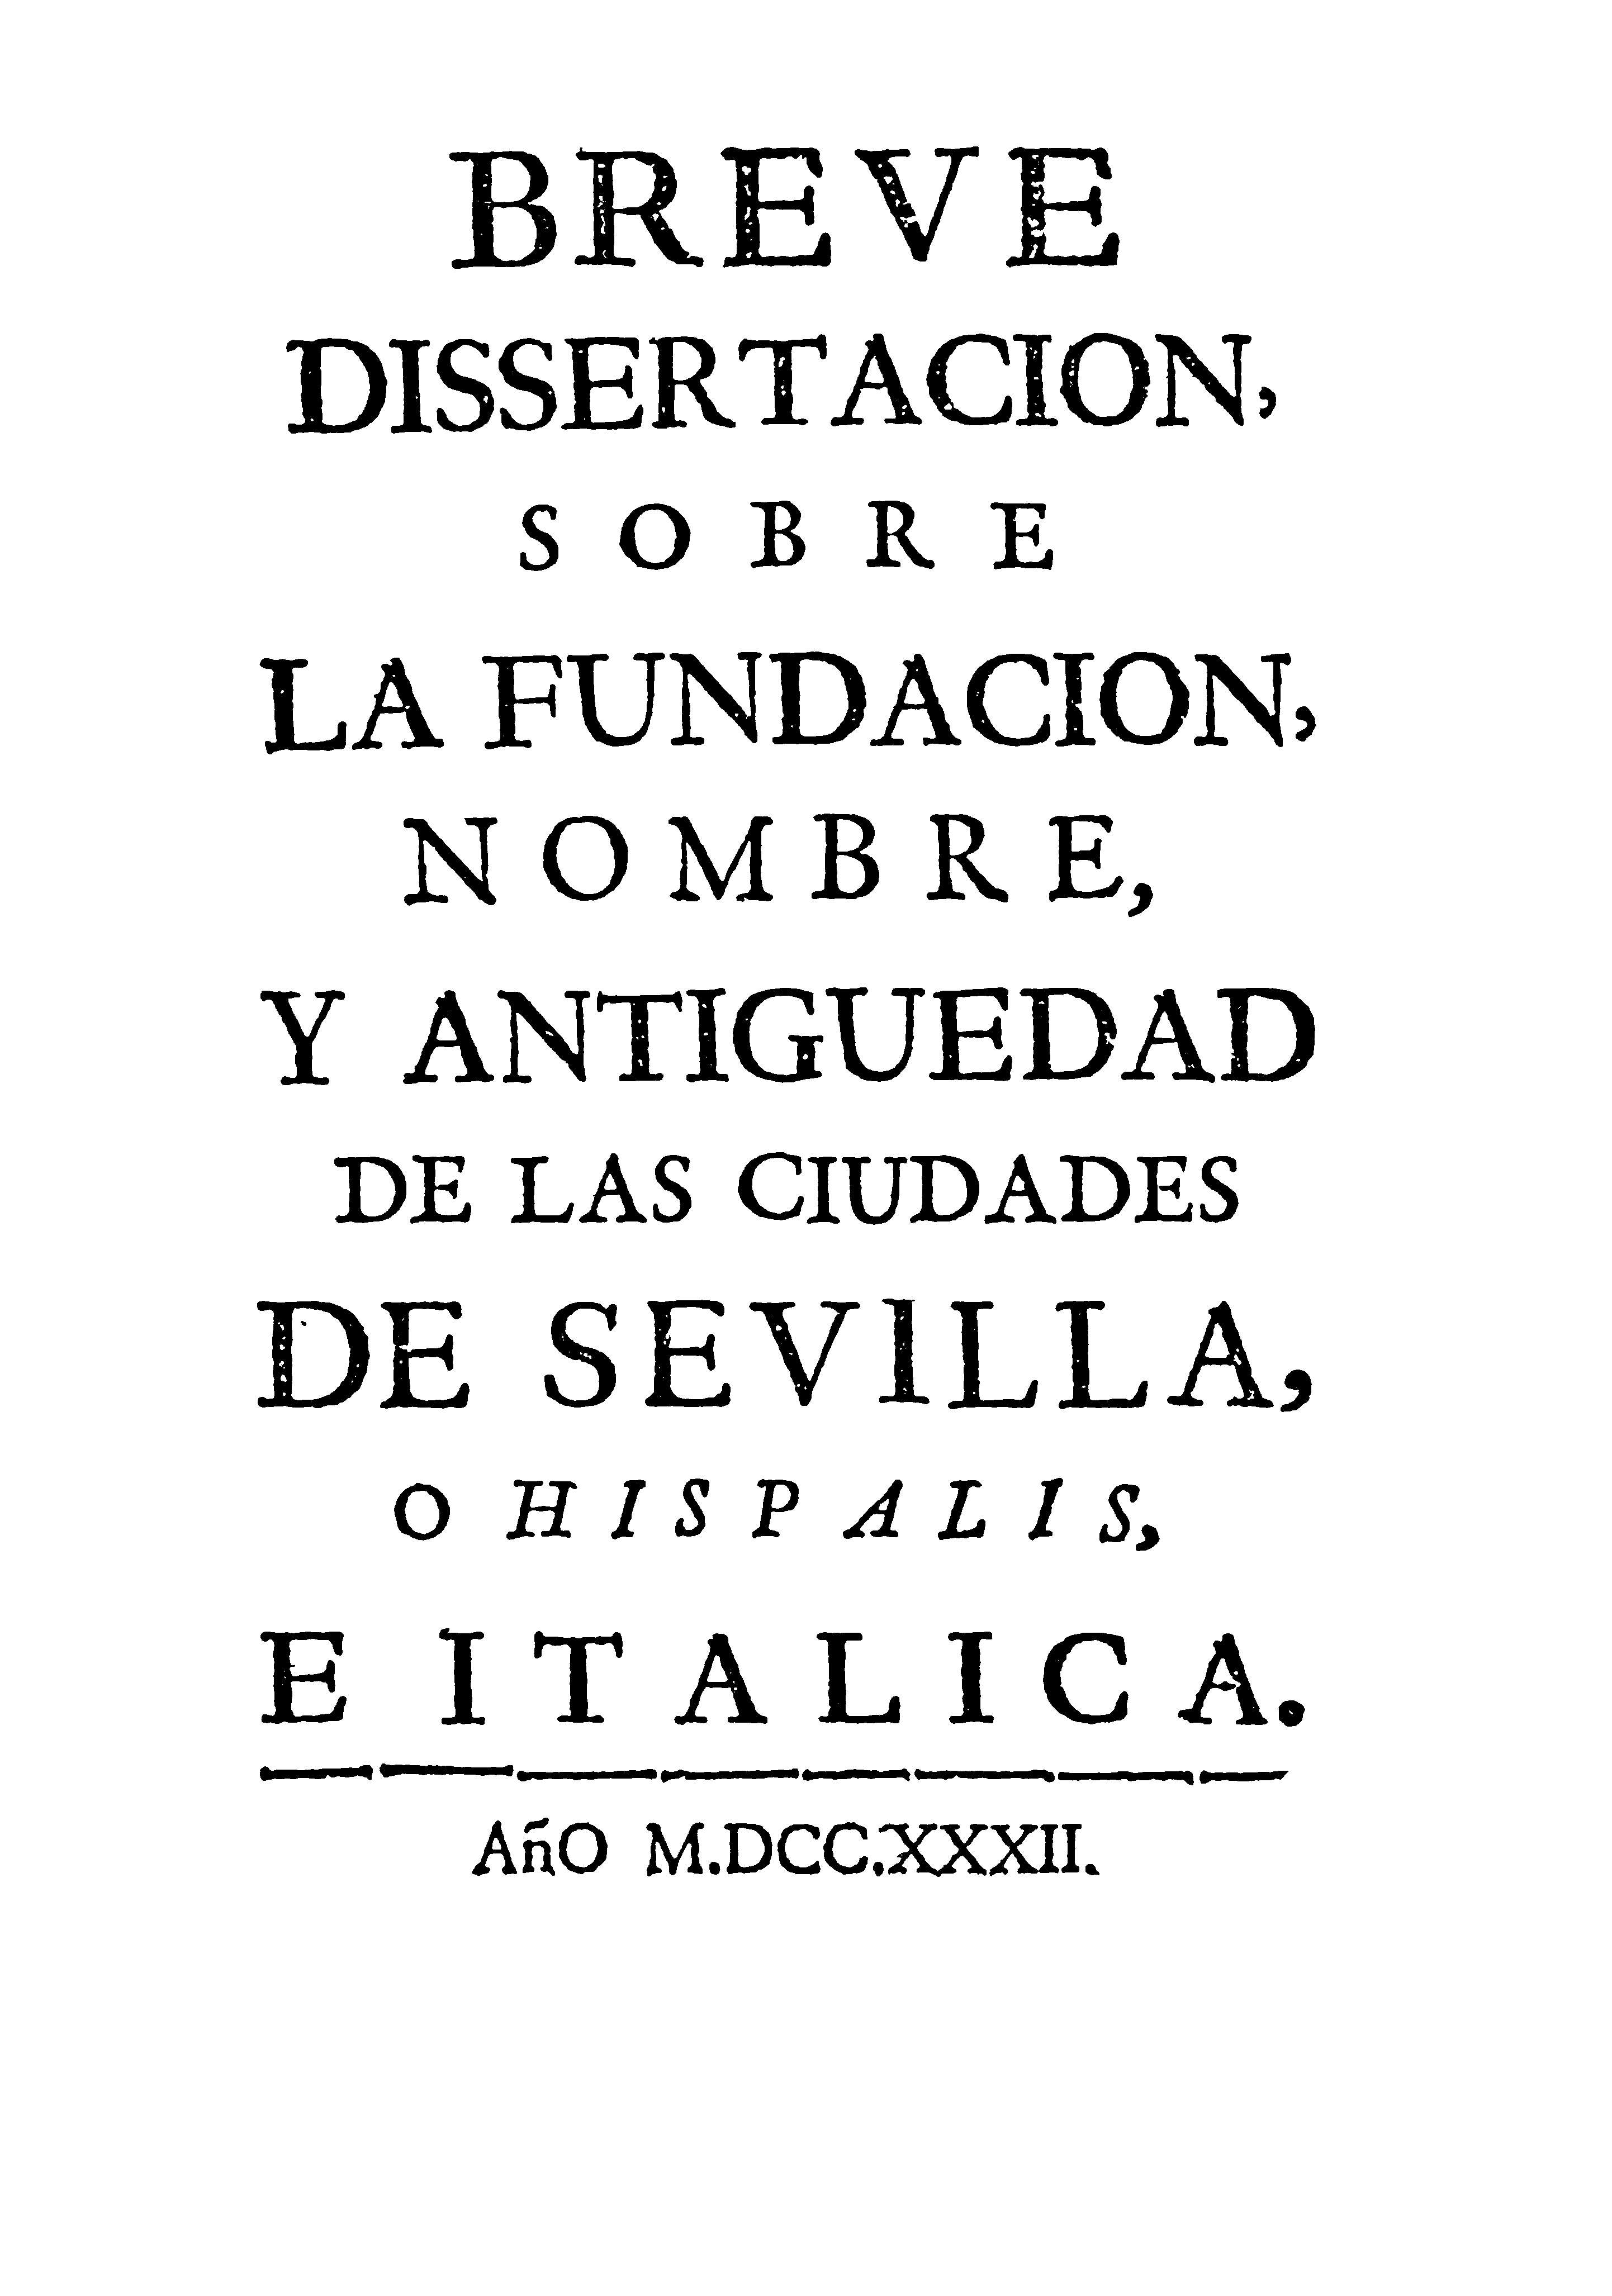 Breve dissertacion, sobre la fundacion, nombre, y antiguedad de las ciudades de Sevilla o Hipalis e Italiica.